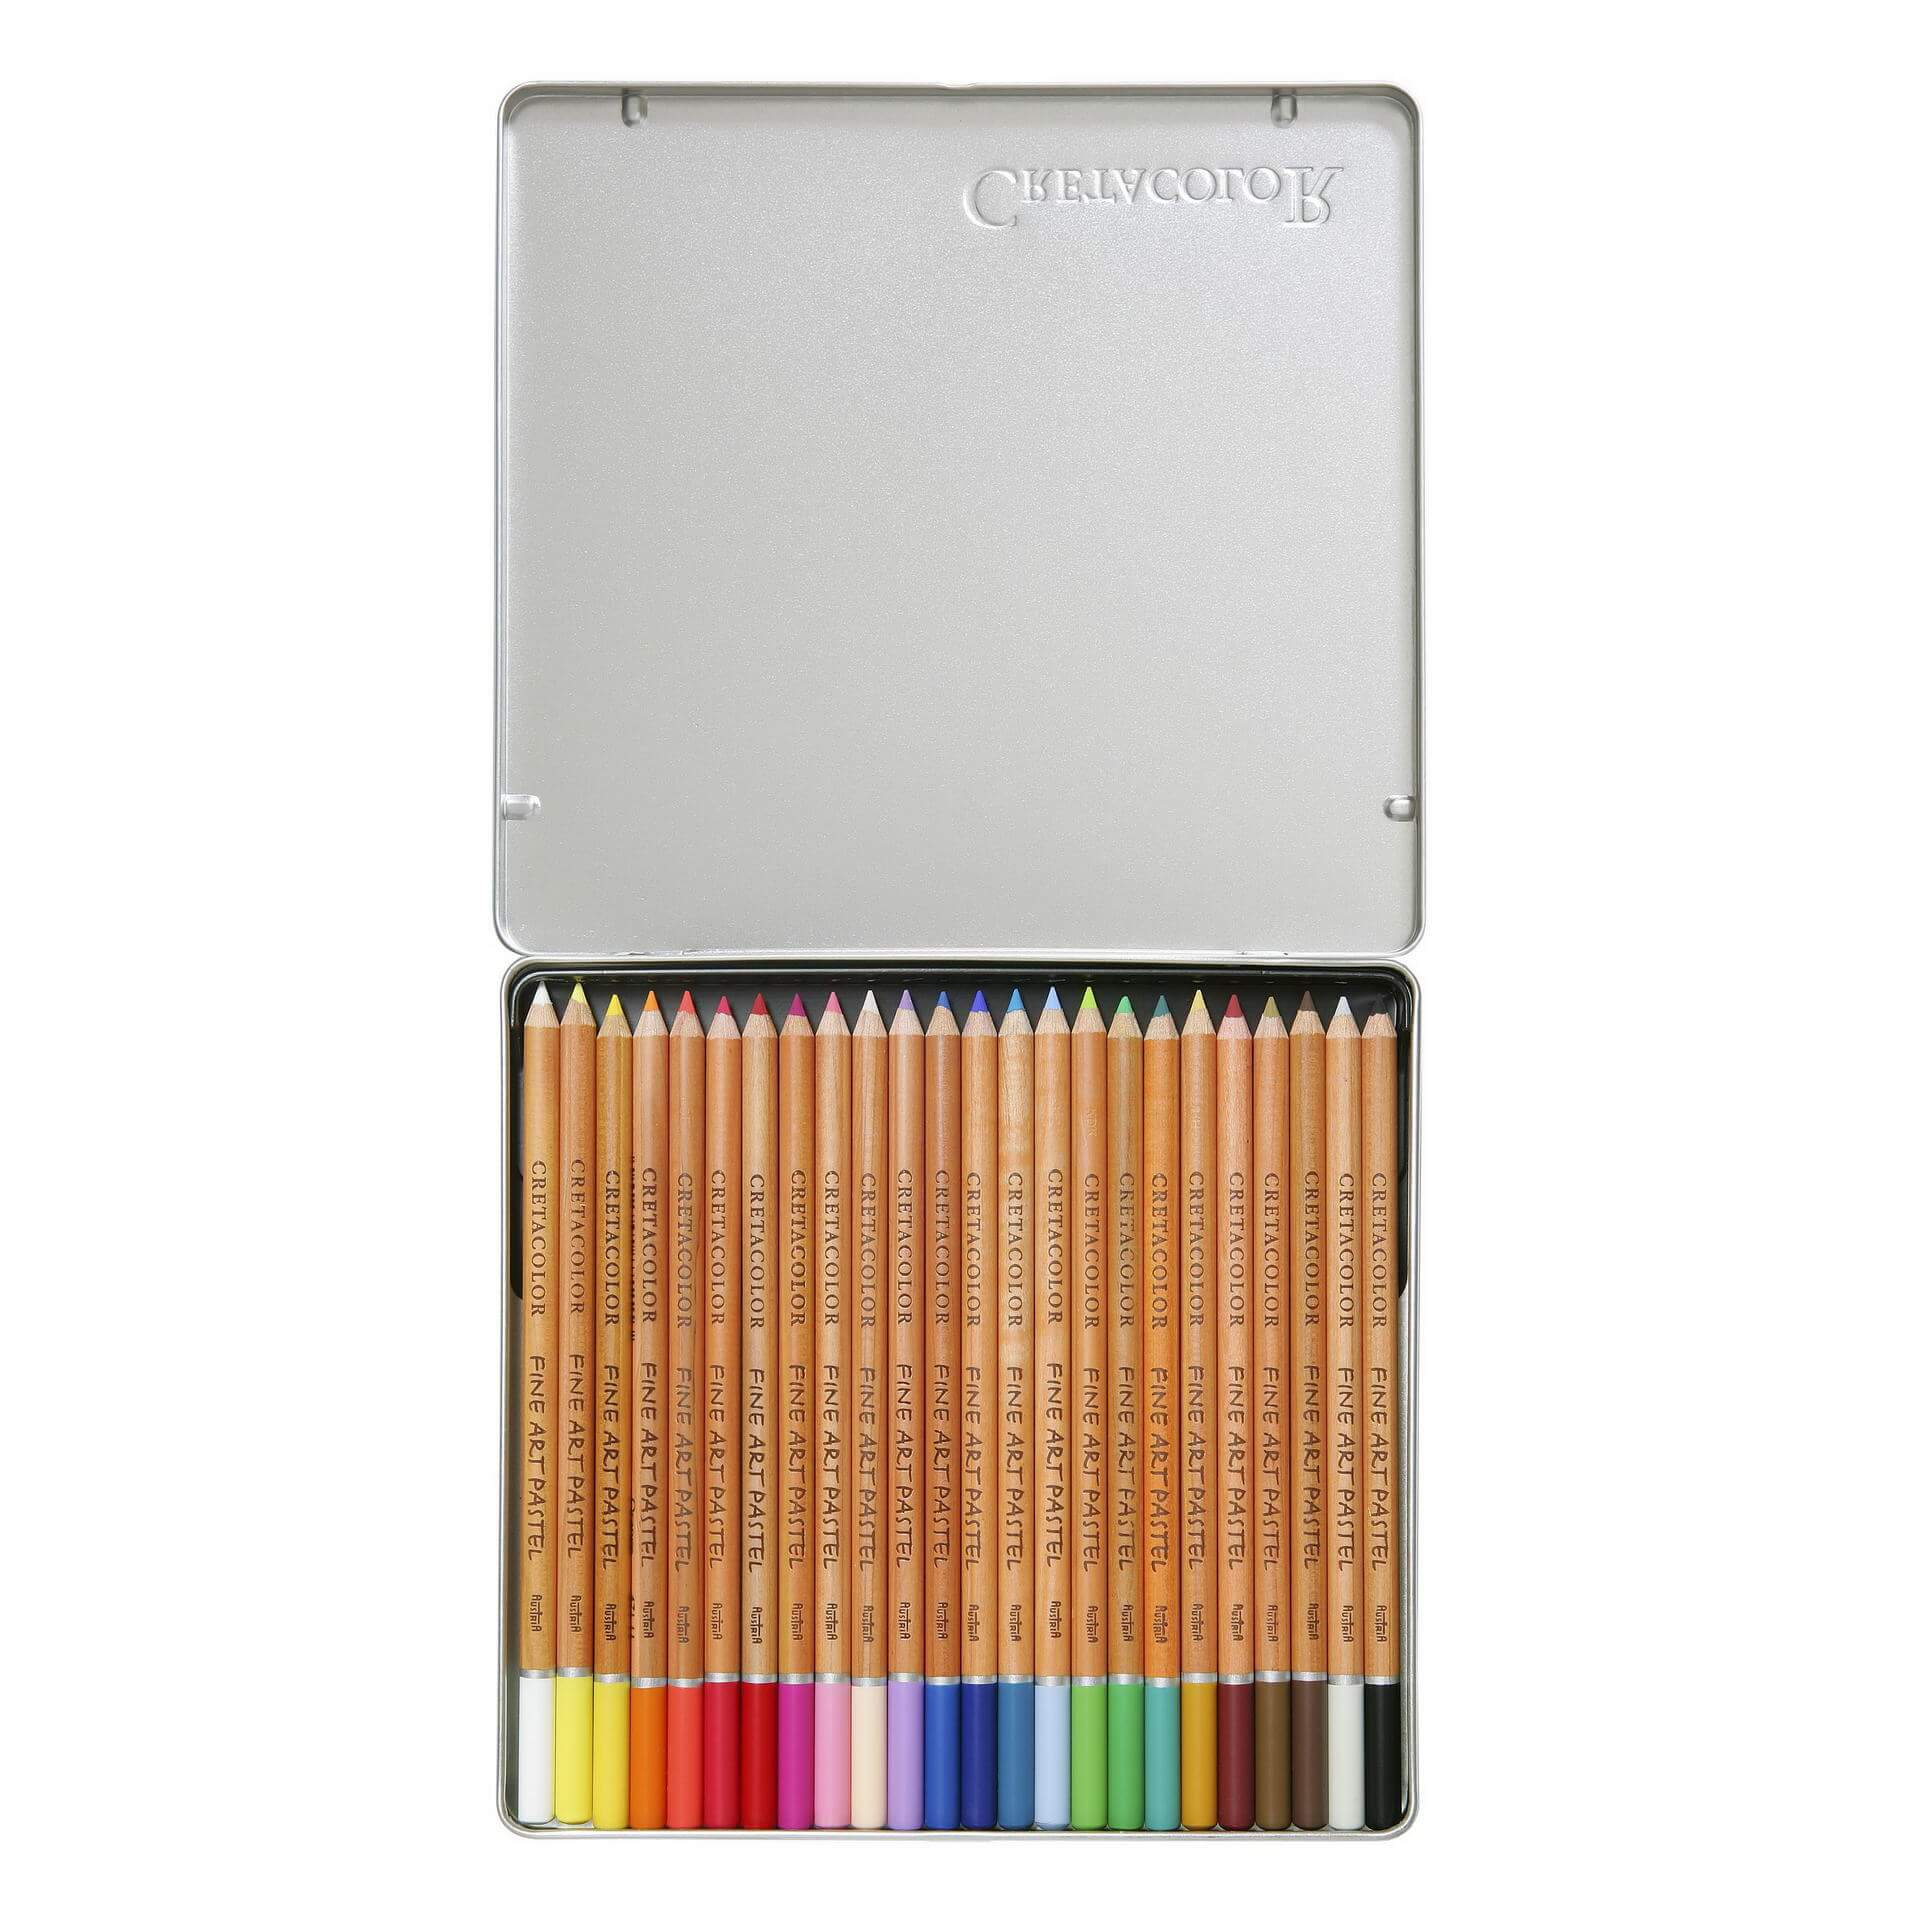 Cretacolor Artists Pastel Pencil Set of 24 colours